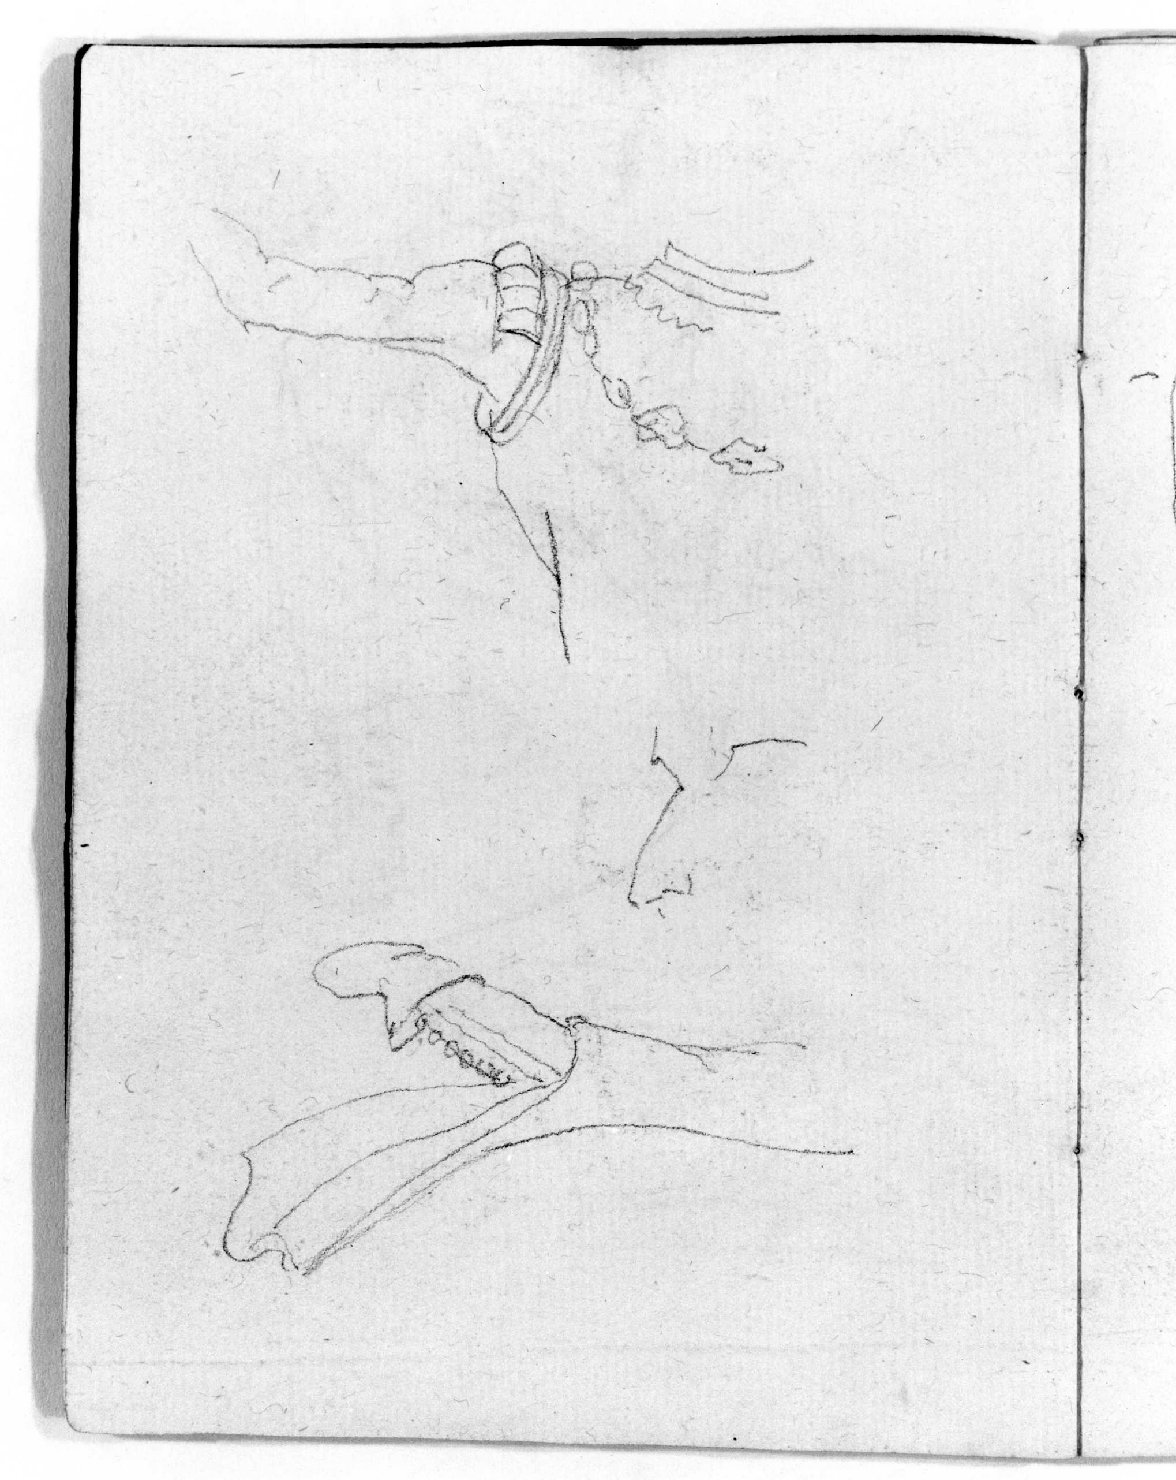 panneggio (disegno, serie) di Canella Giuseppe (prima metà sec. XIX)